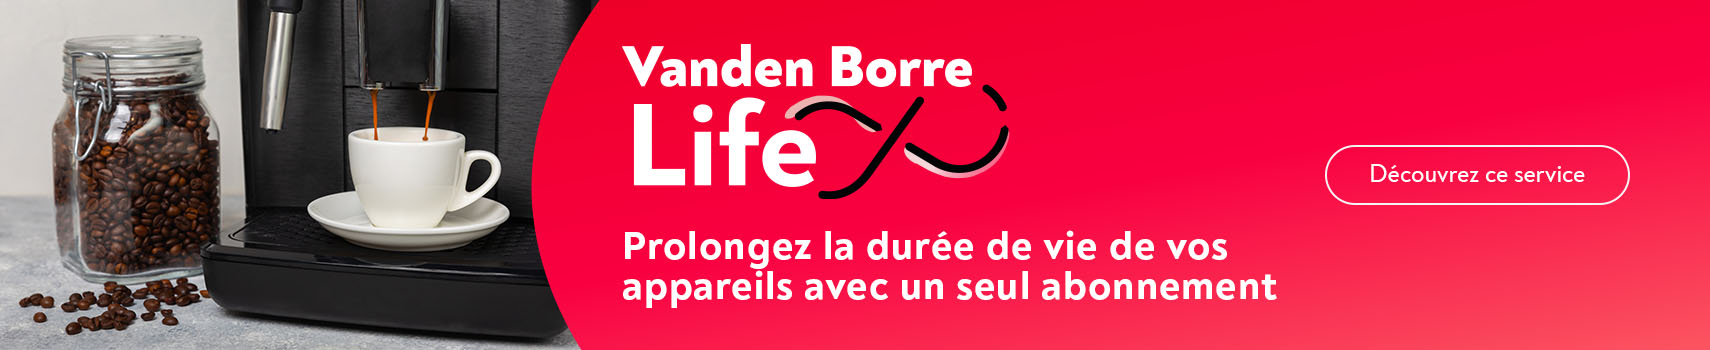 Vanden Borre Life : Prolongez la dure de vie de vos appareils avec un seul abonnement